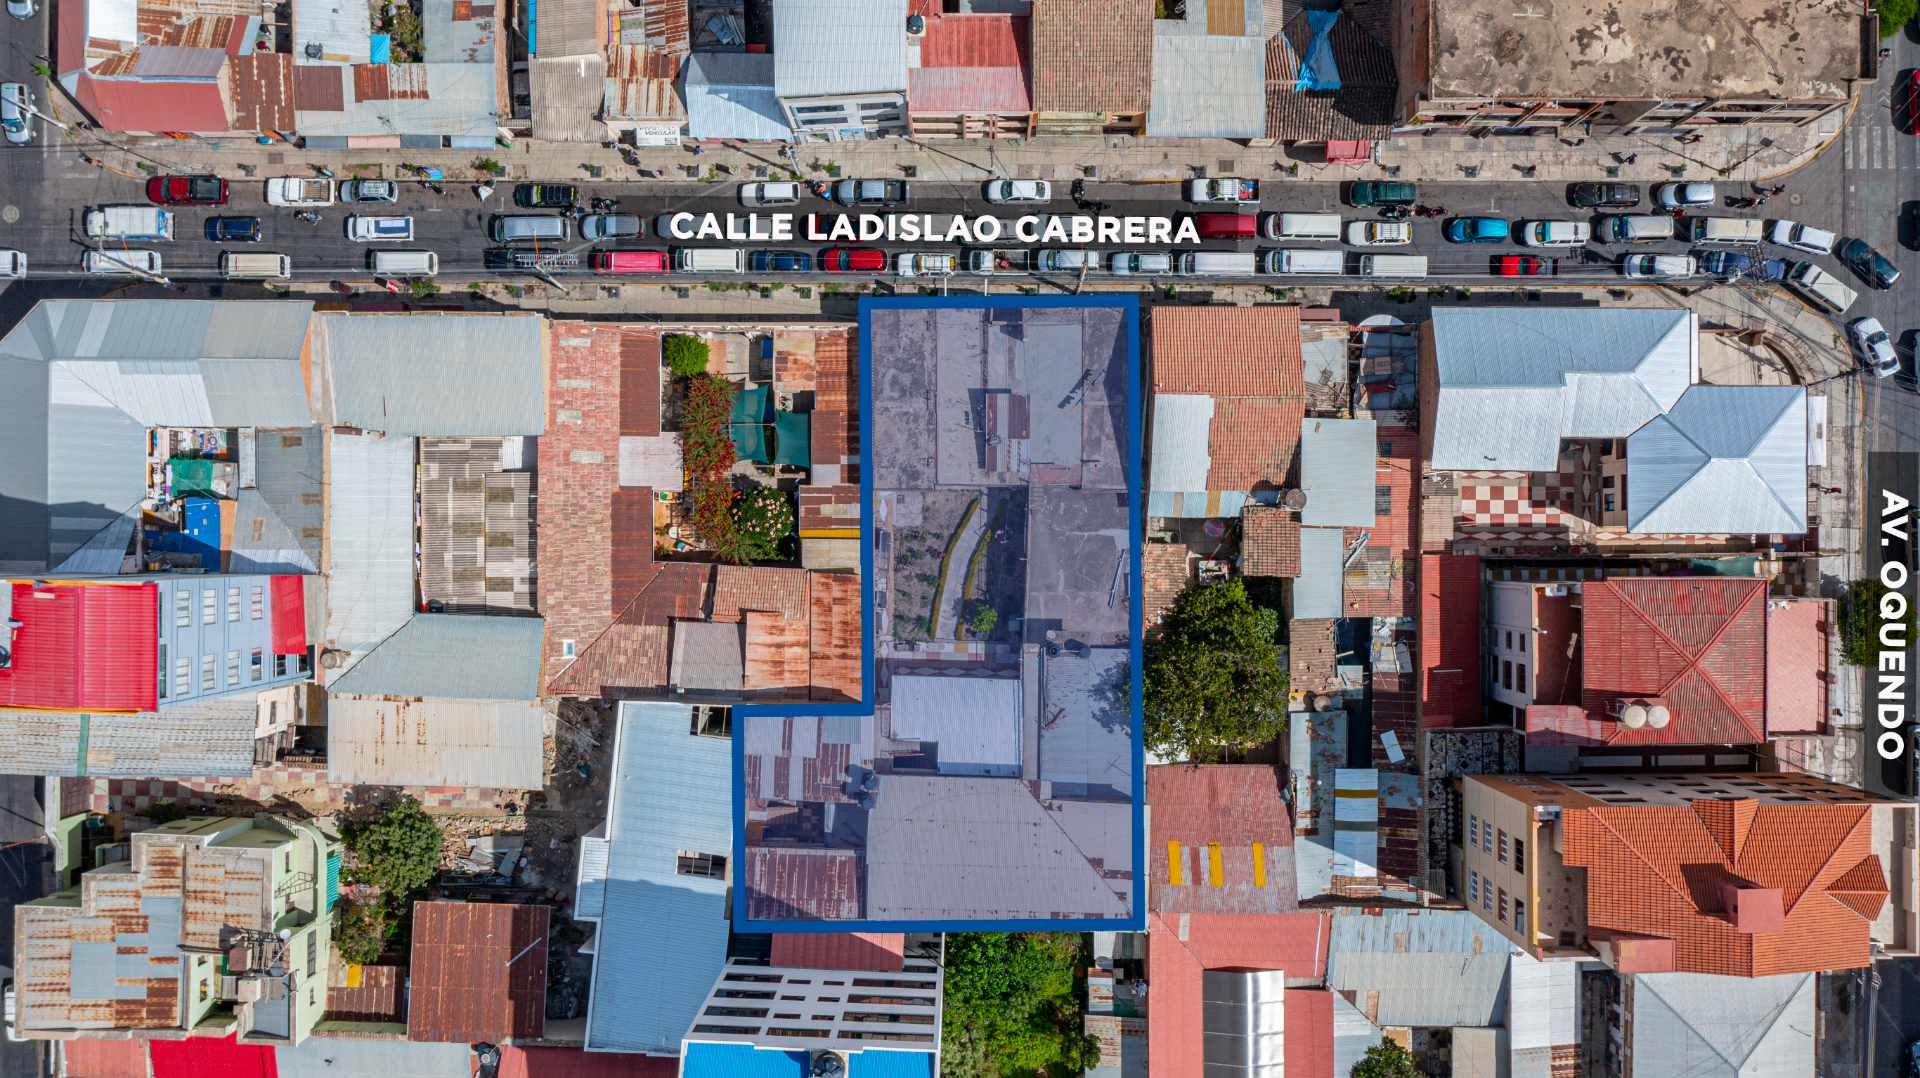 Terreno en VentaC. Ladislao Cabrera entre Av. Oquendo y 16 de Julio- Centro  Foto 3